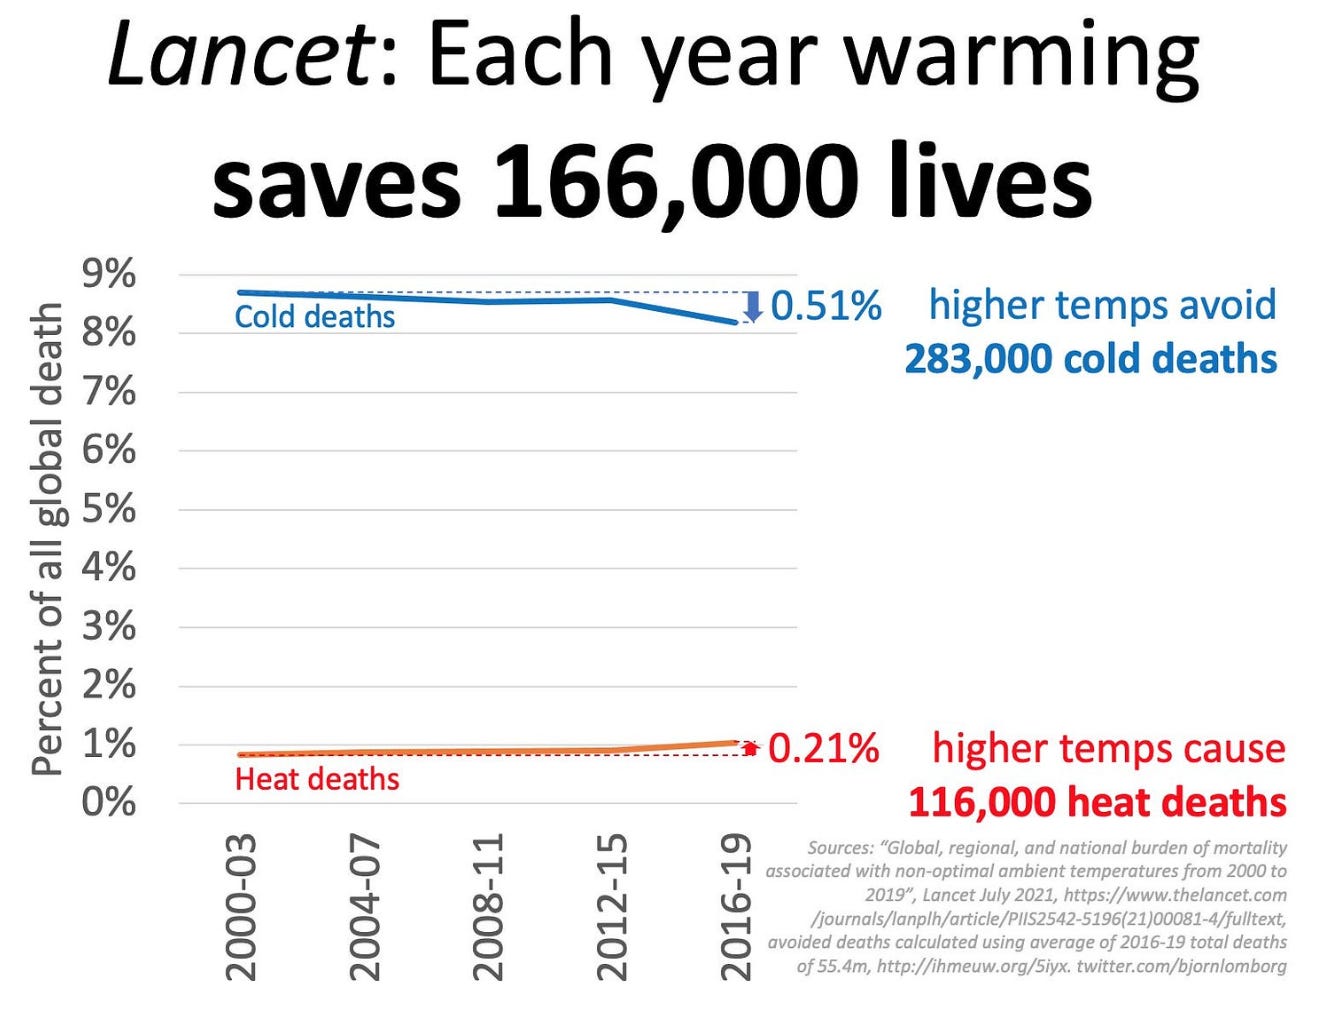 IMAGE 2 - Lancet: Each year warming saves 166,000 lives